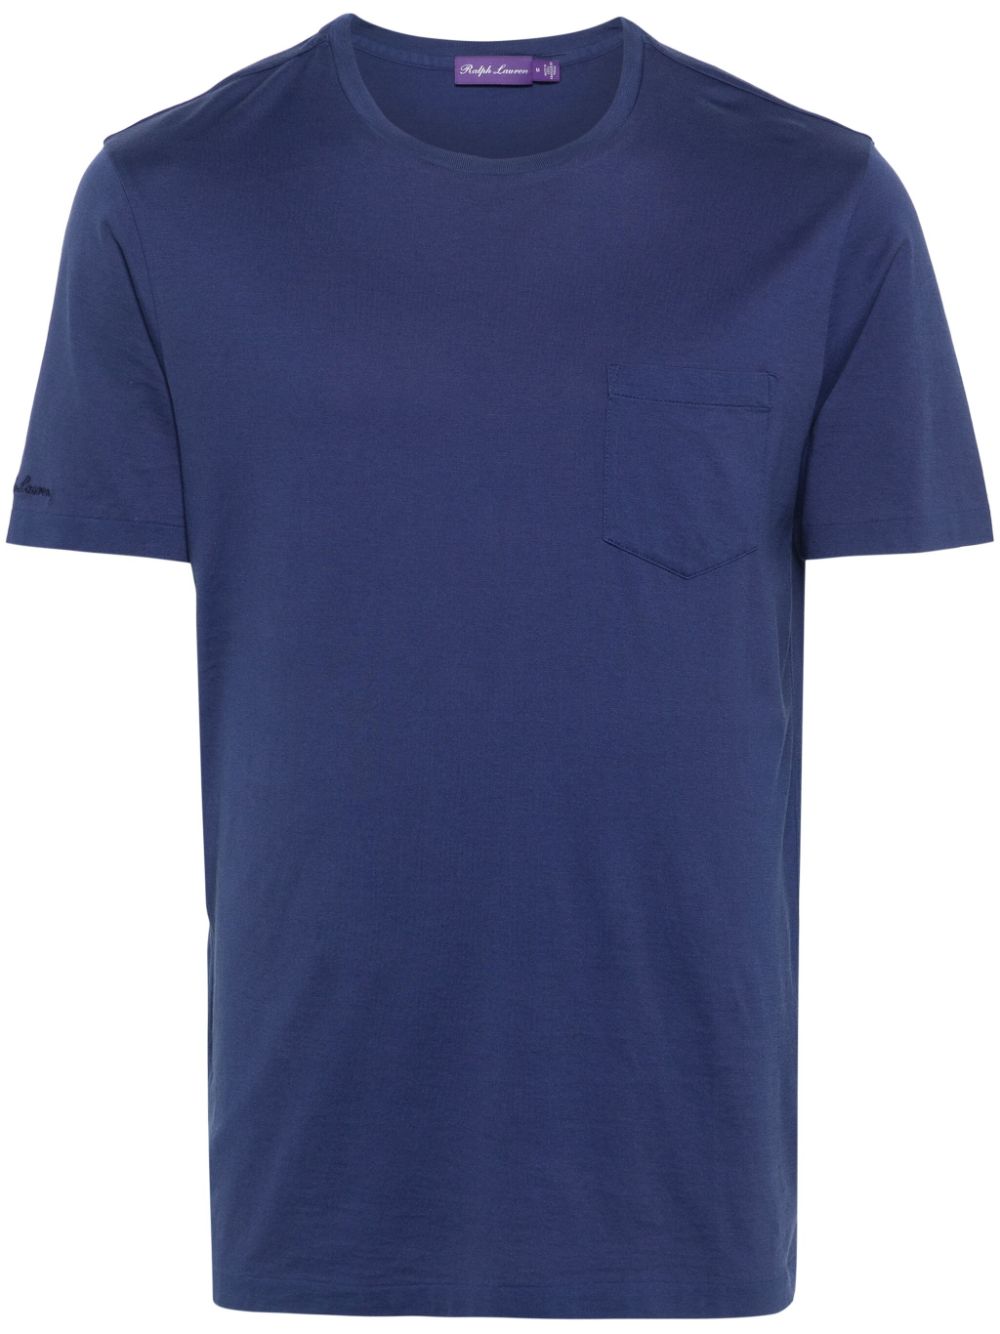 Ralph Lauren Collection chest pocket cotton T-shirt - Blue von Ralph Lauren Collection